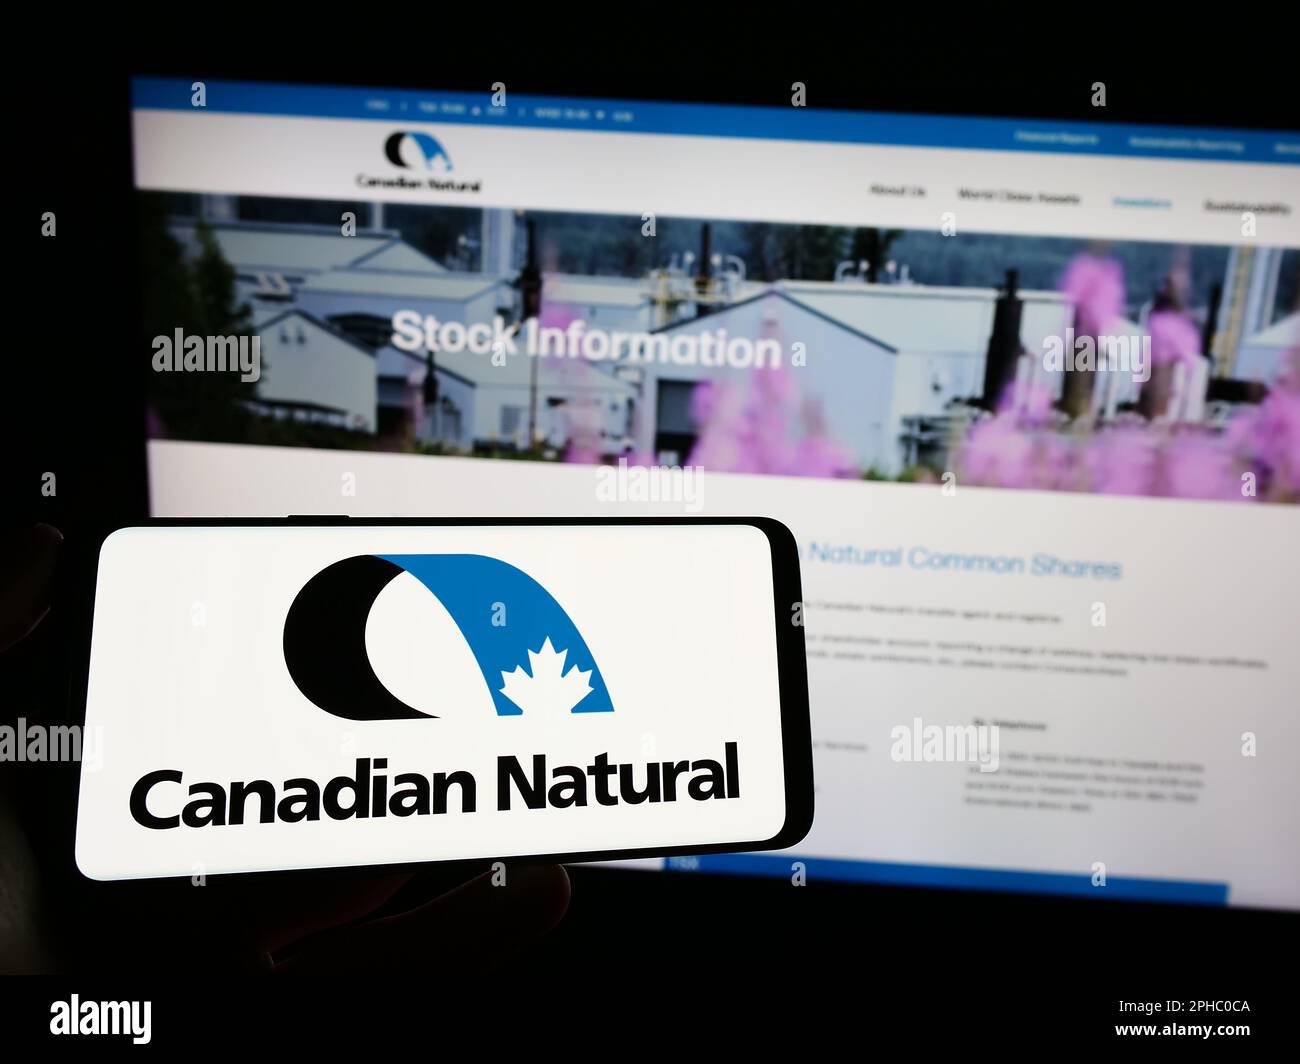 Persona che tiene il telefono cellulare con il logo della società Canadian Natural Resources Limited sullo schermo di fronte alla pagina web. Messa a fuoco sul display del telefono. Foto Stock